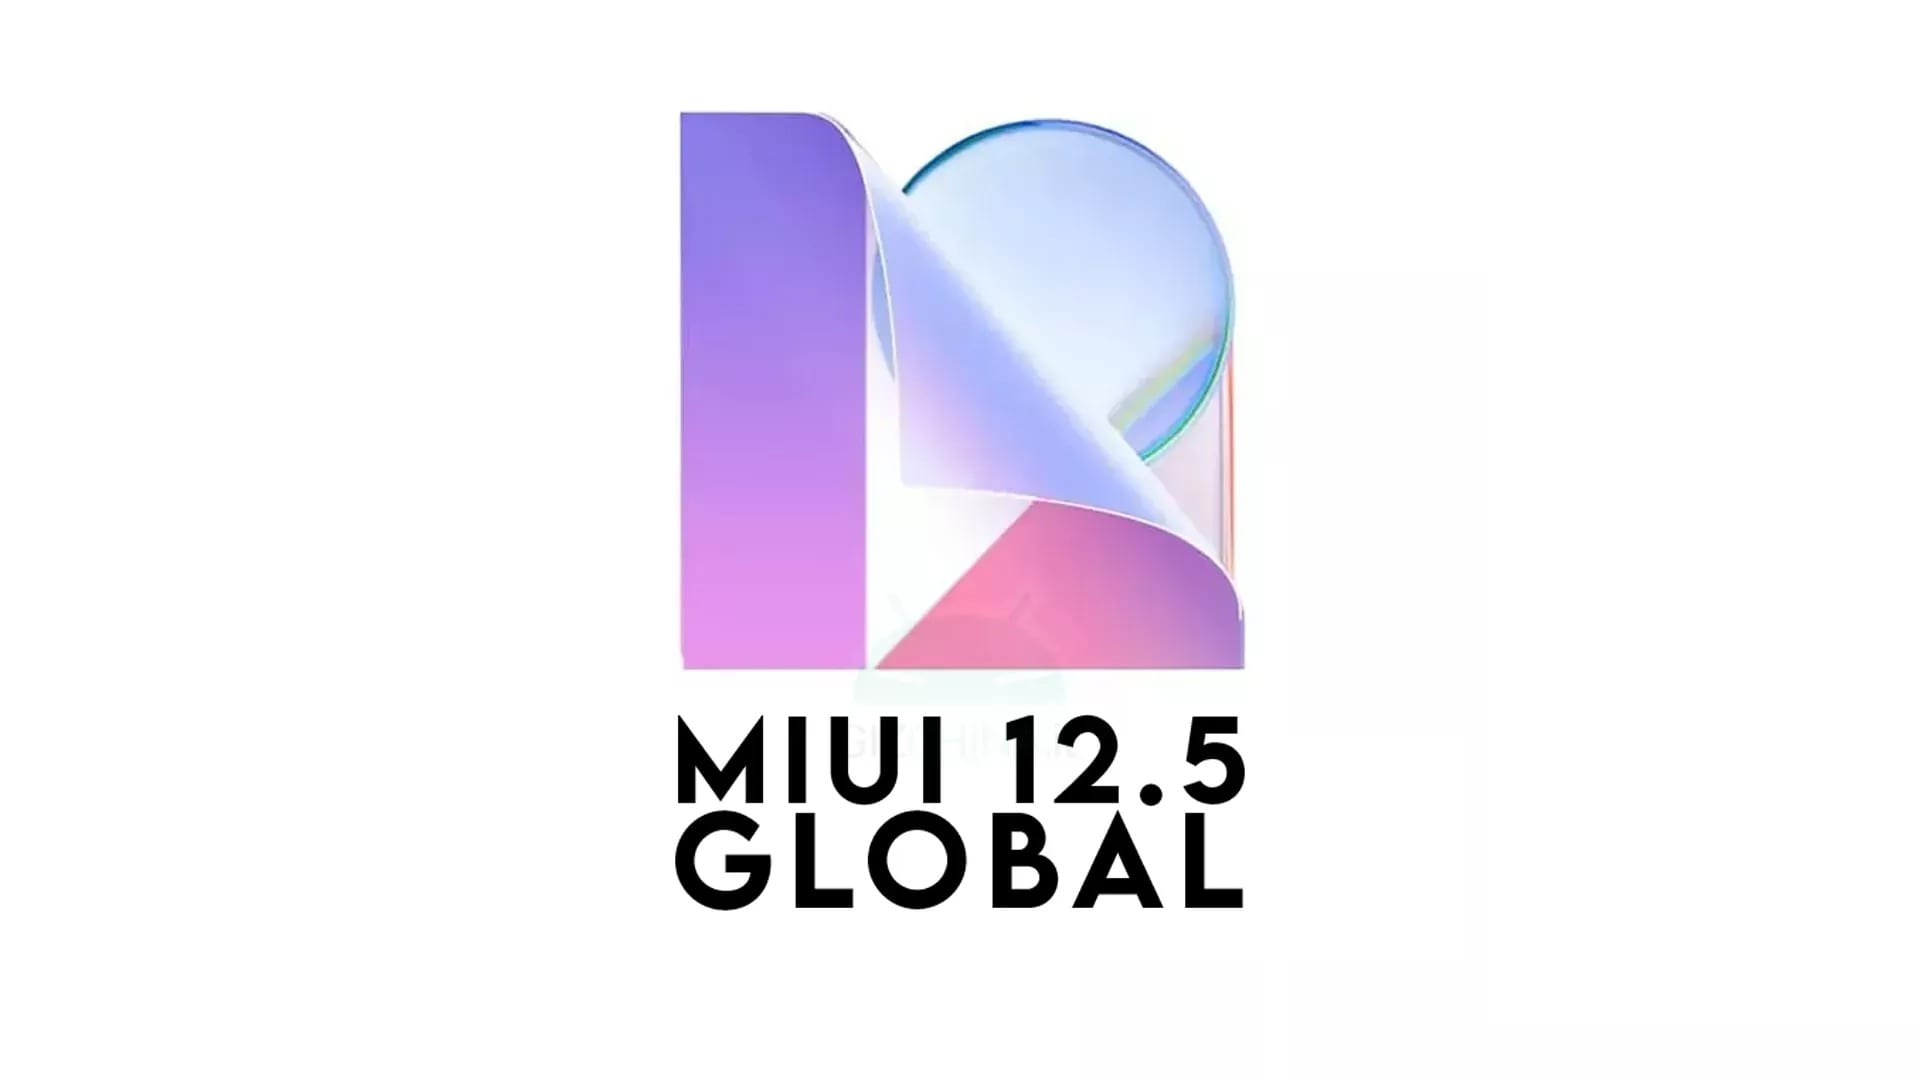 Miui 12.5 реклама. MIUI 12.5. Лого MIUI 12.5. Xiaomi MIUI 12.5. MIUI Global 12.5.1.